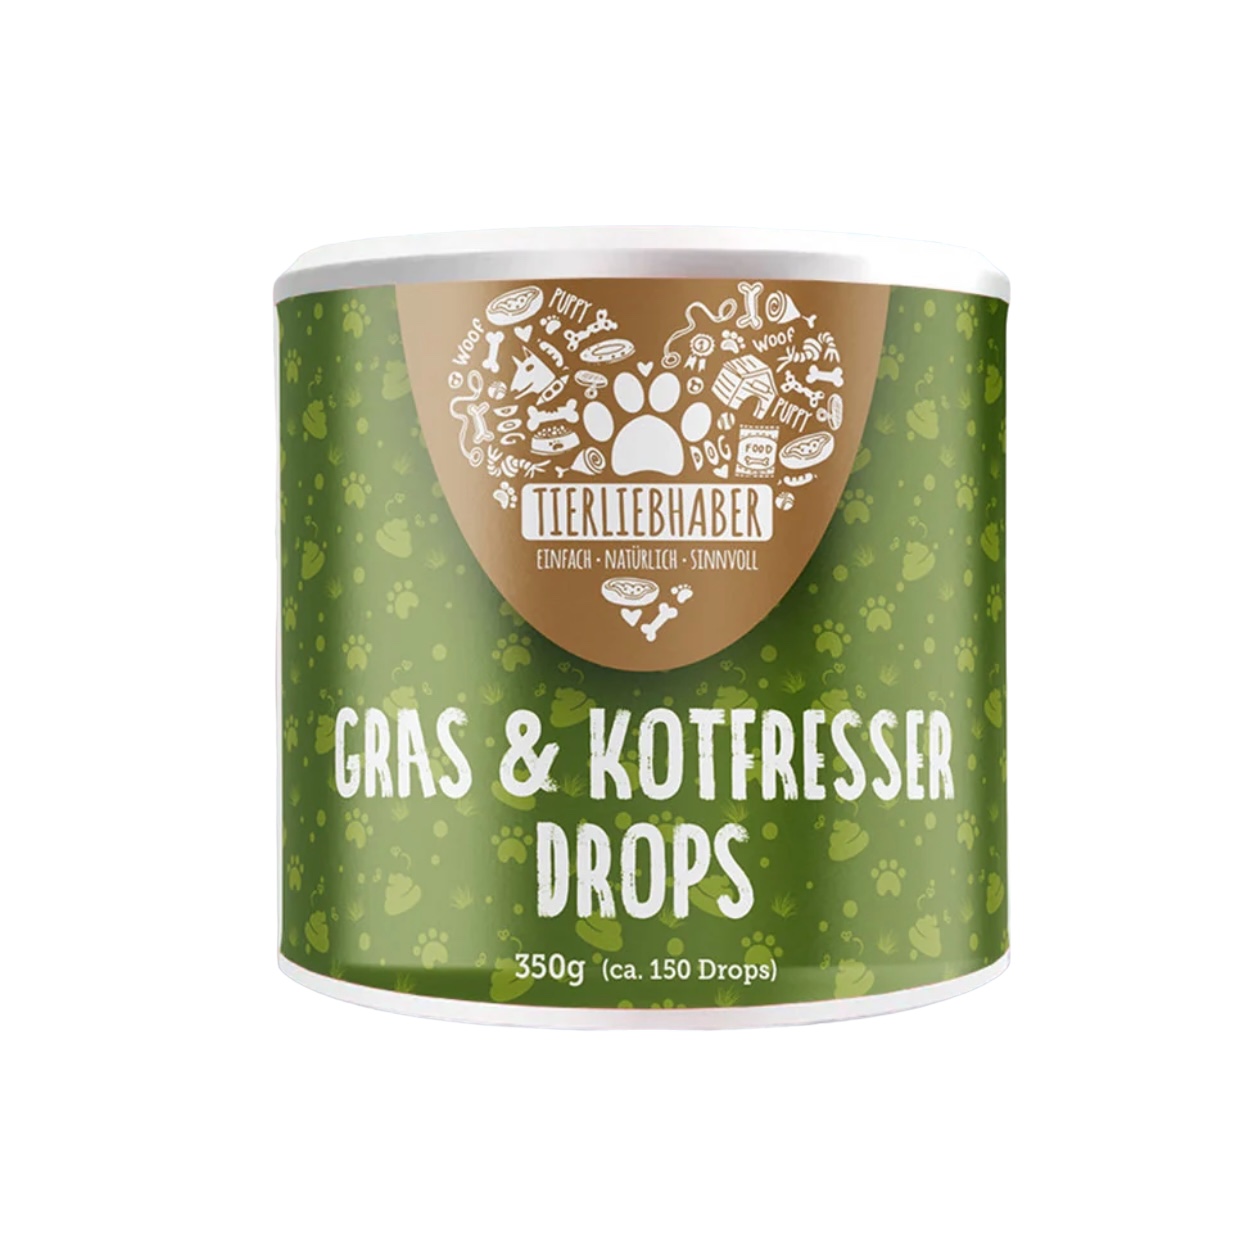 Gras- & Kotfresser Drops Tierliebhaber